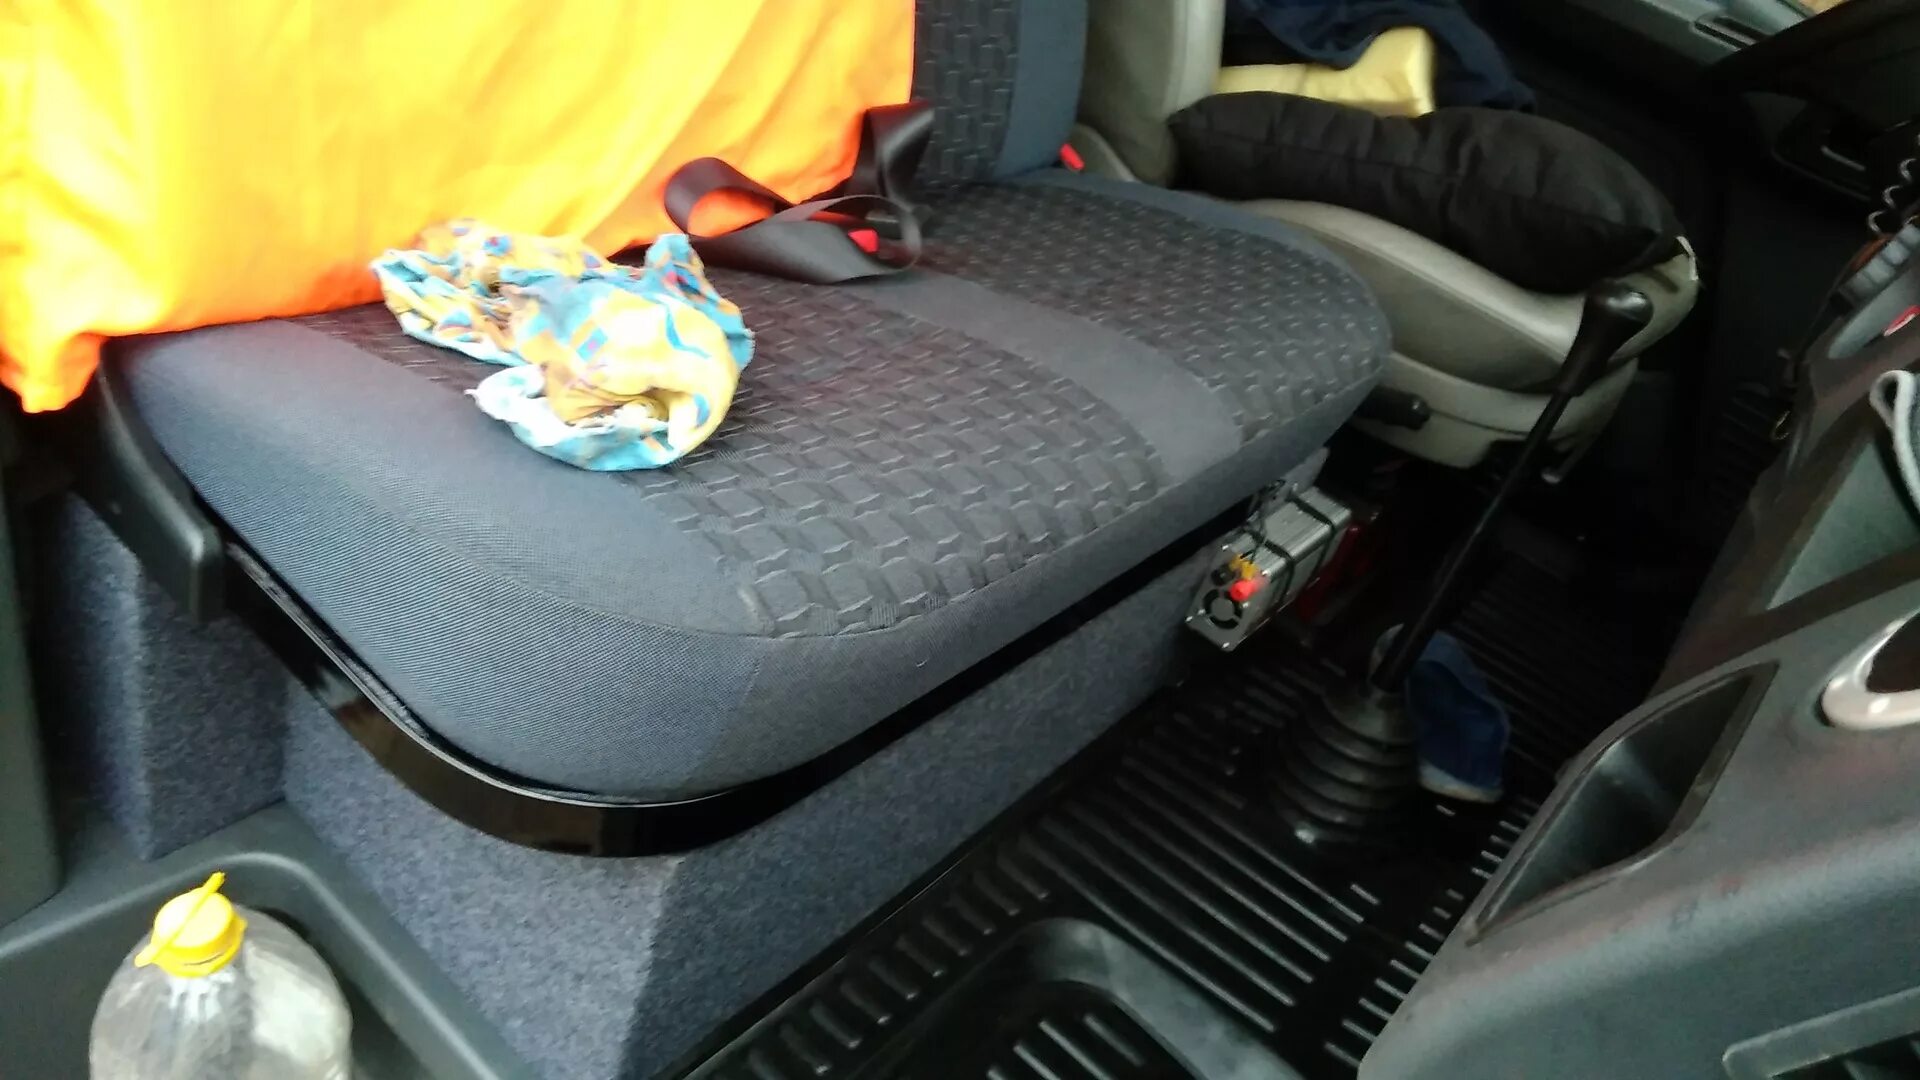 Сидение пассажирское ГАЗ 3302. Ящик под сиденье Газель Некст. Ящик под пассажирское сиденье Газель Некст.